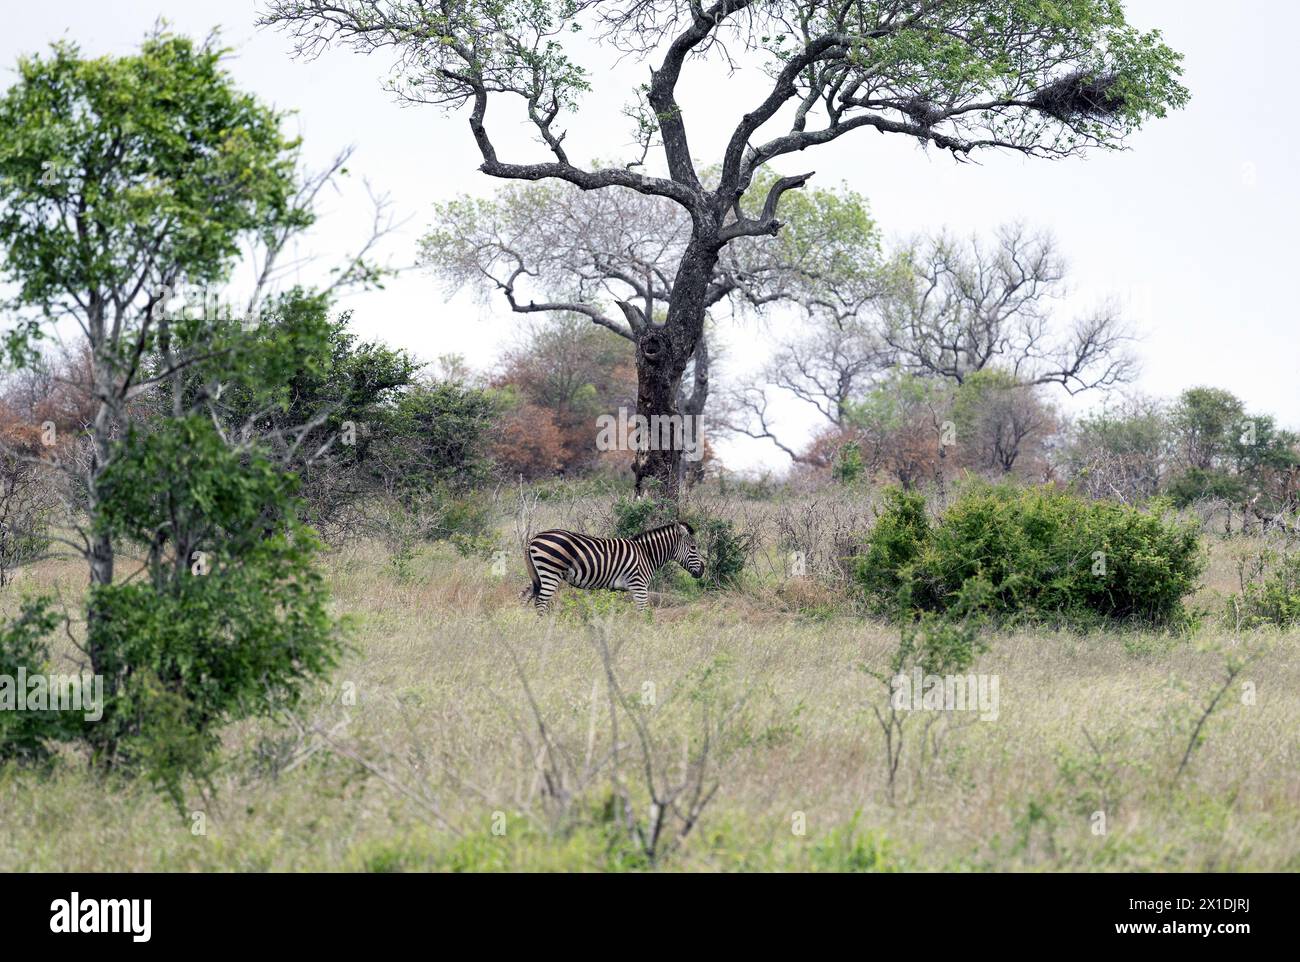 Le zèbre africain marche au milieu des arbres verts et des buissons dans la savane. Safari dans le parc national Kruger, Afrique du Sud. Animaux de la faune de fond, sauvage Banque D'Images